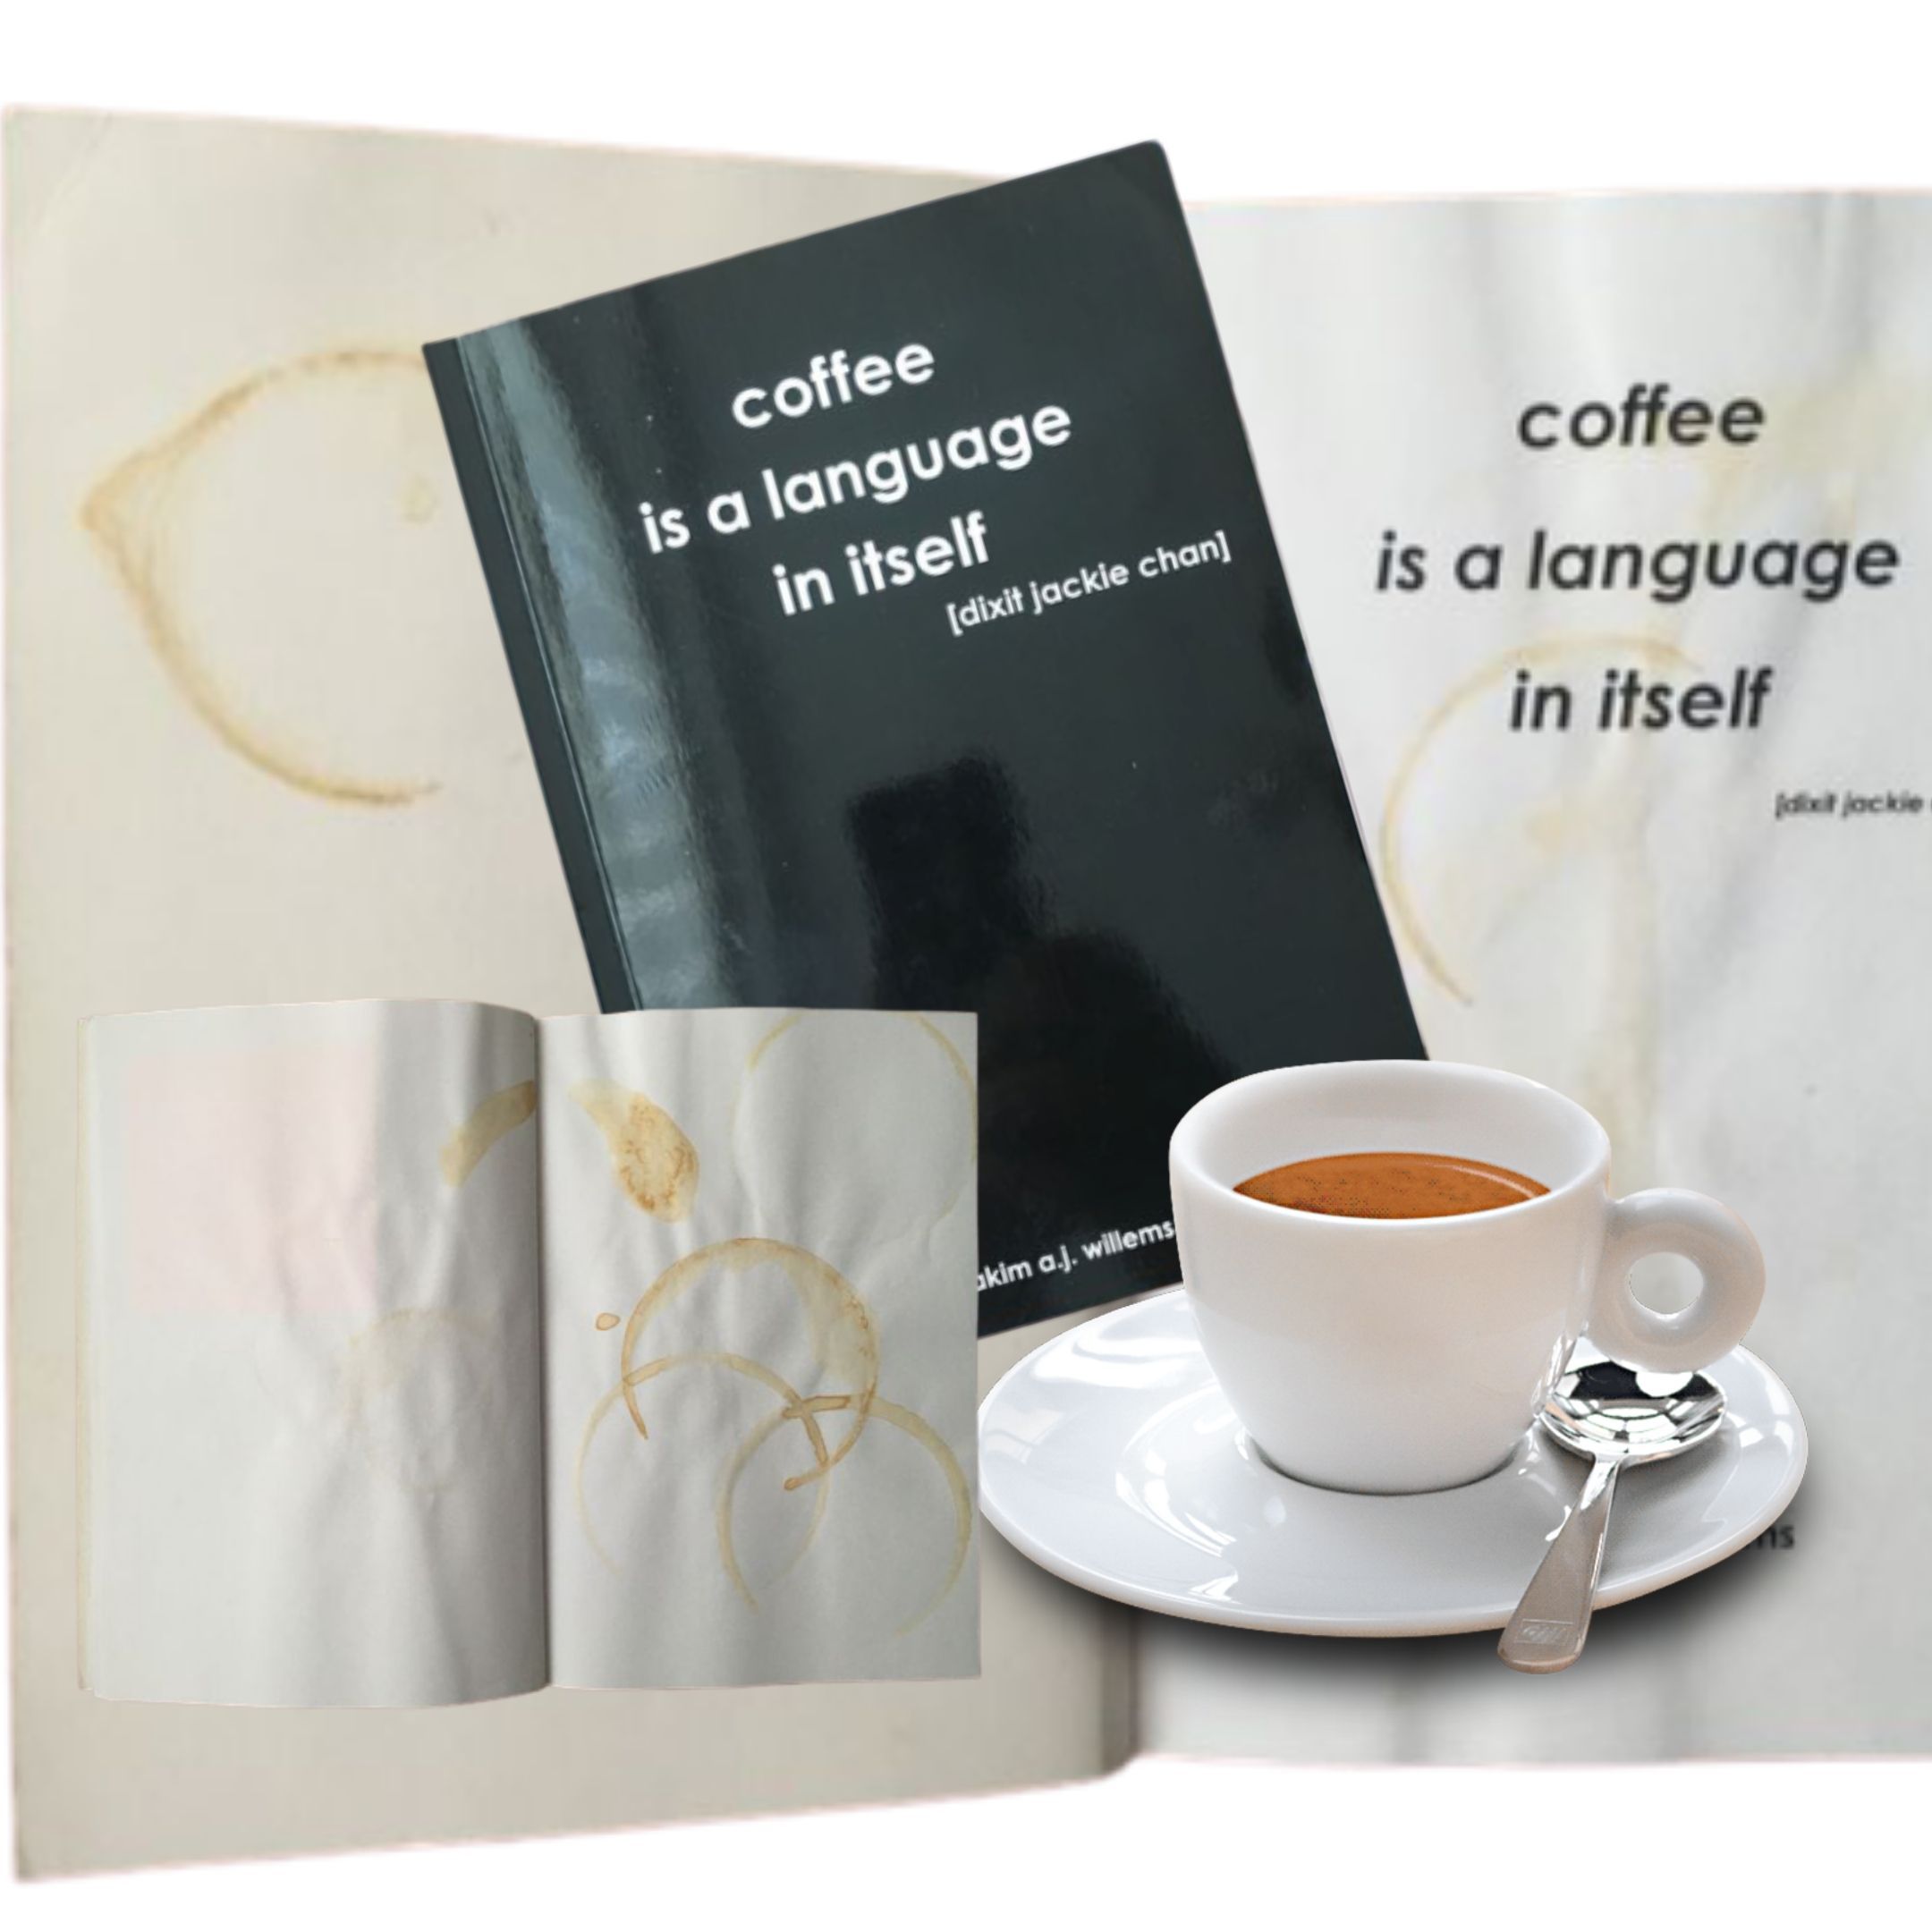 Il caffè come poesia metafisica: il genio “espresso” di Akim A. J. Willems